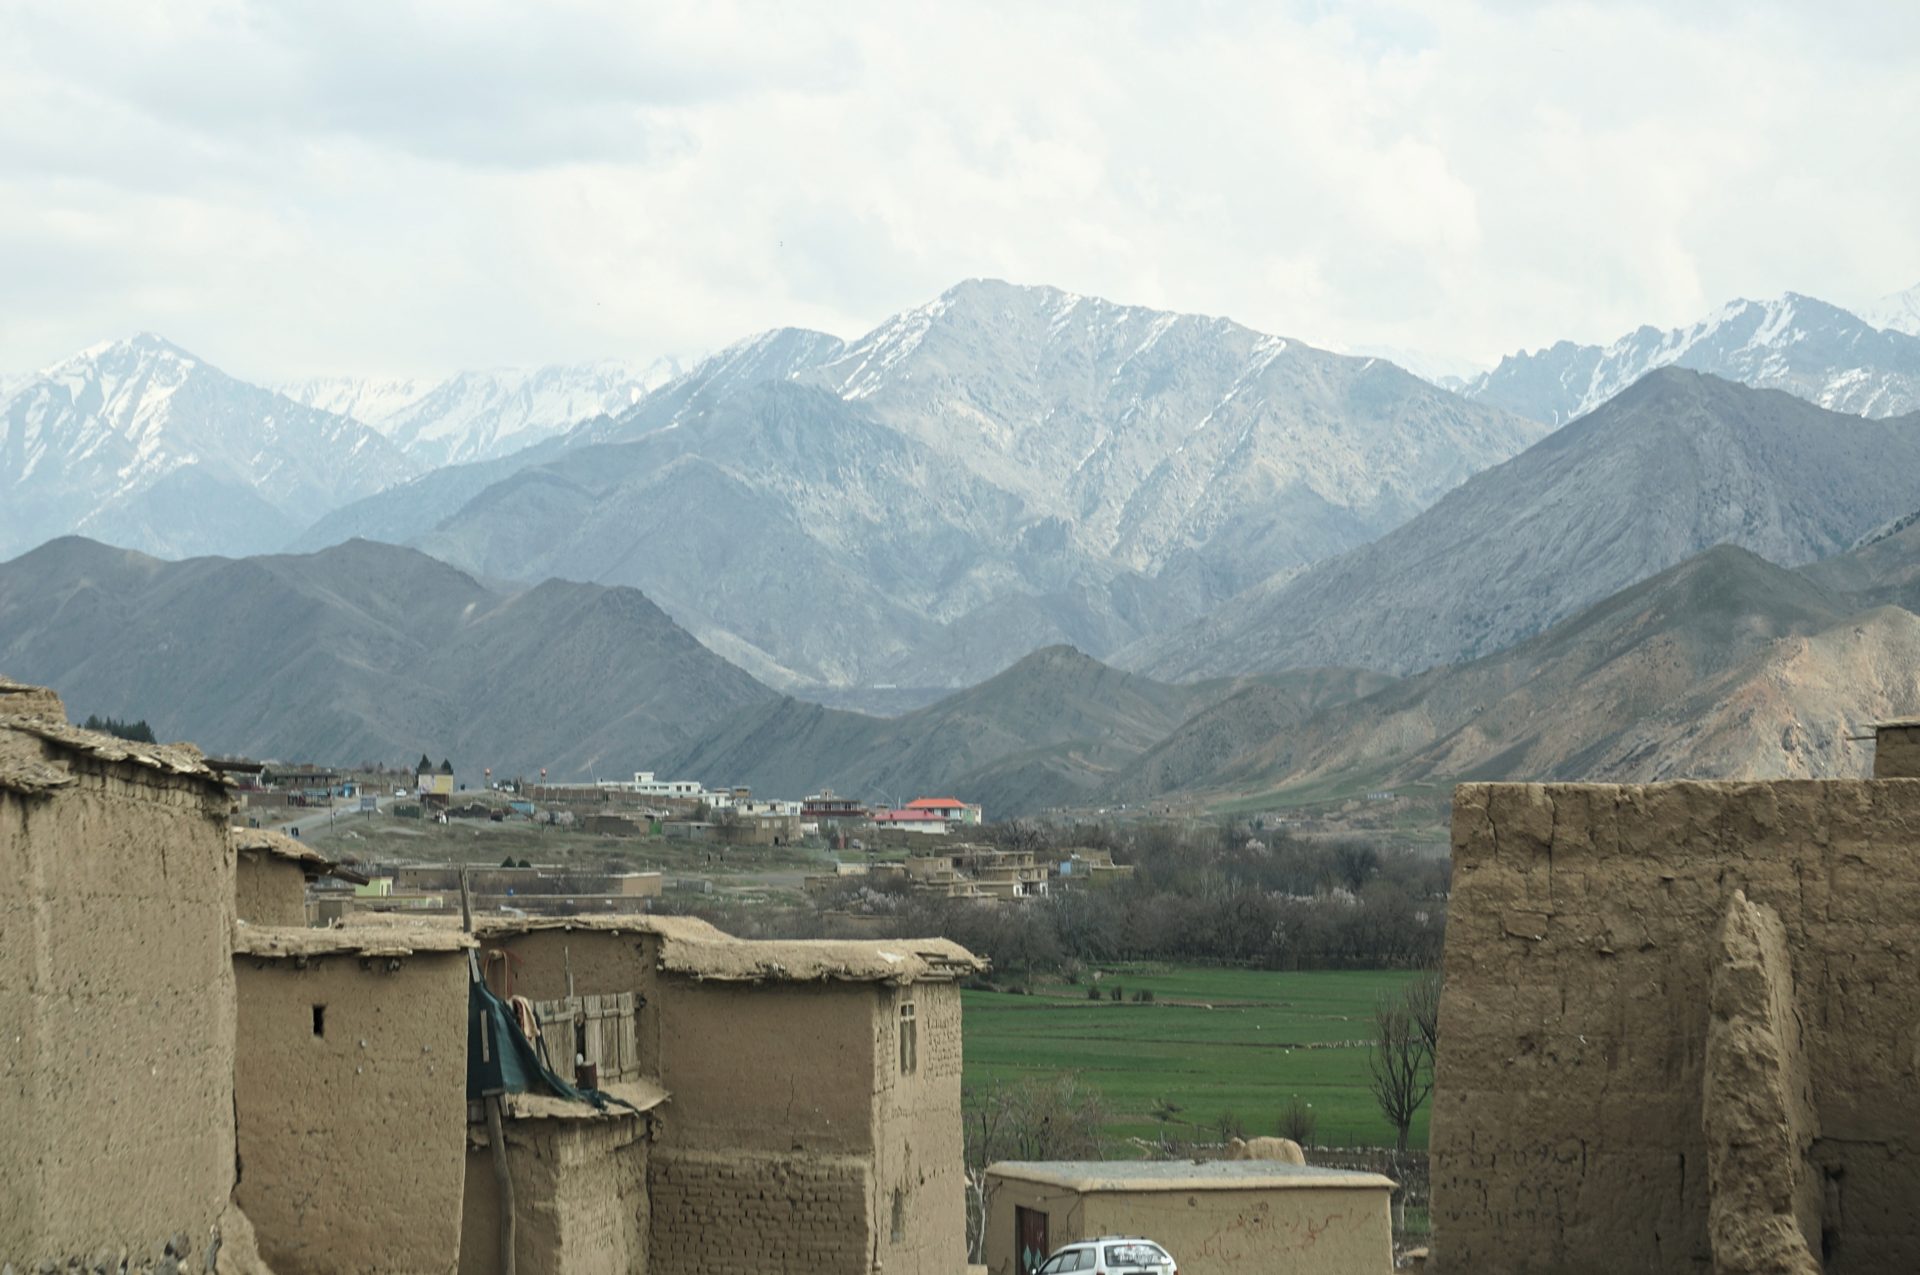 Podcast: The Kabul Peace House